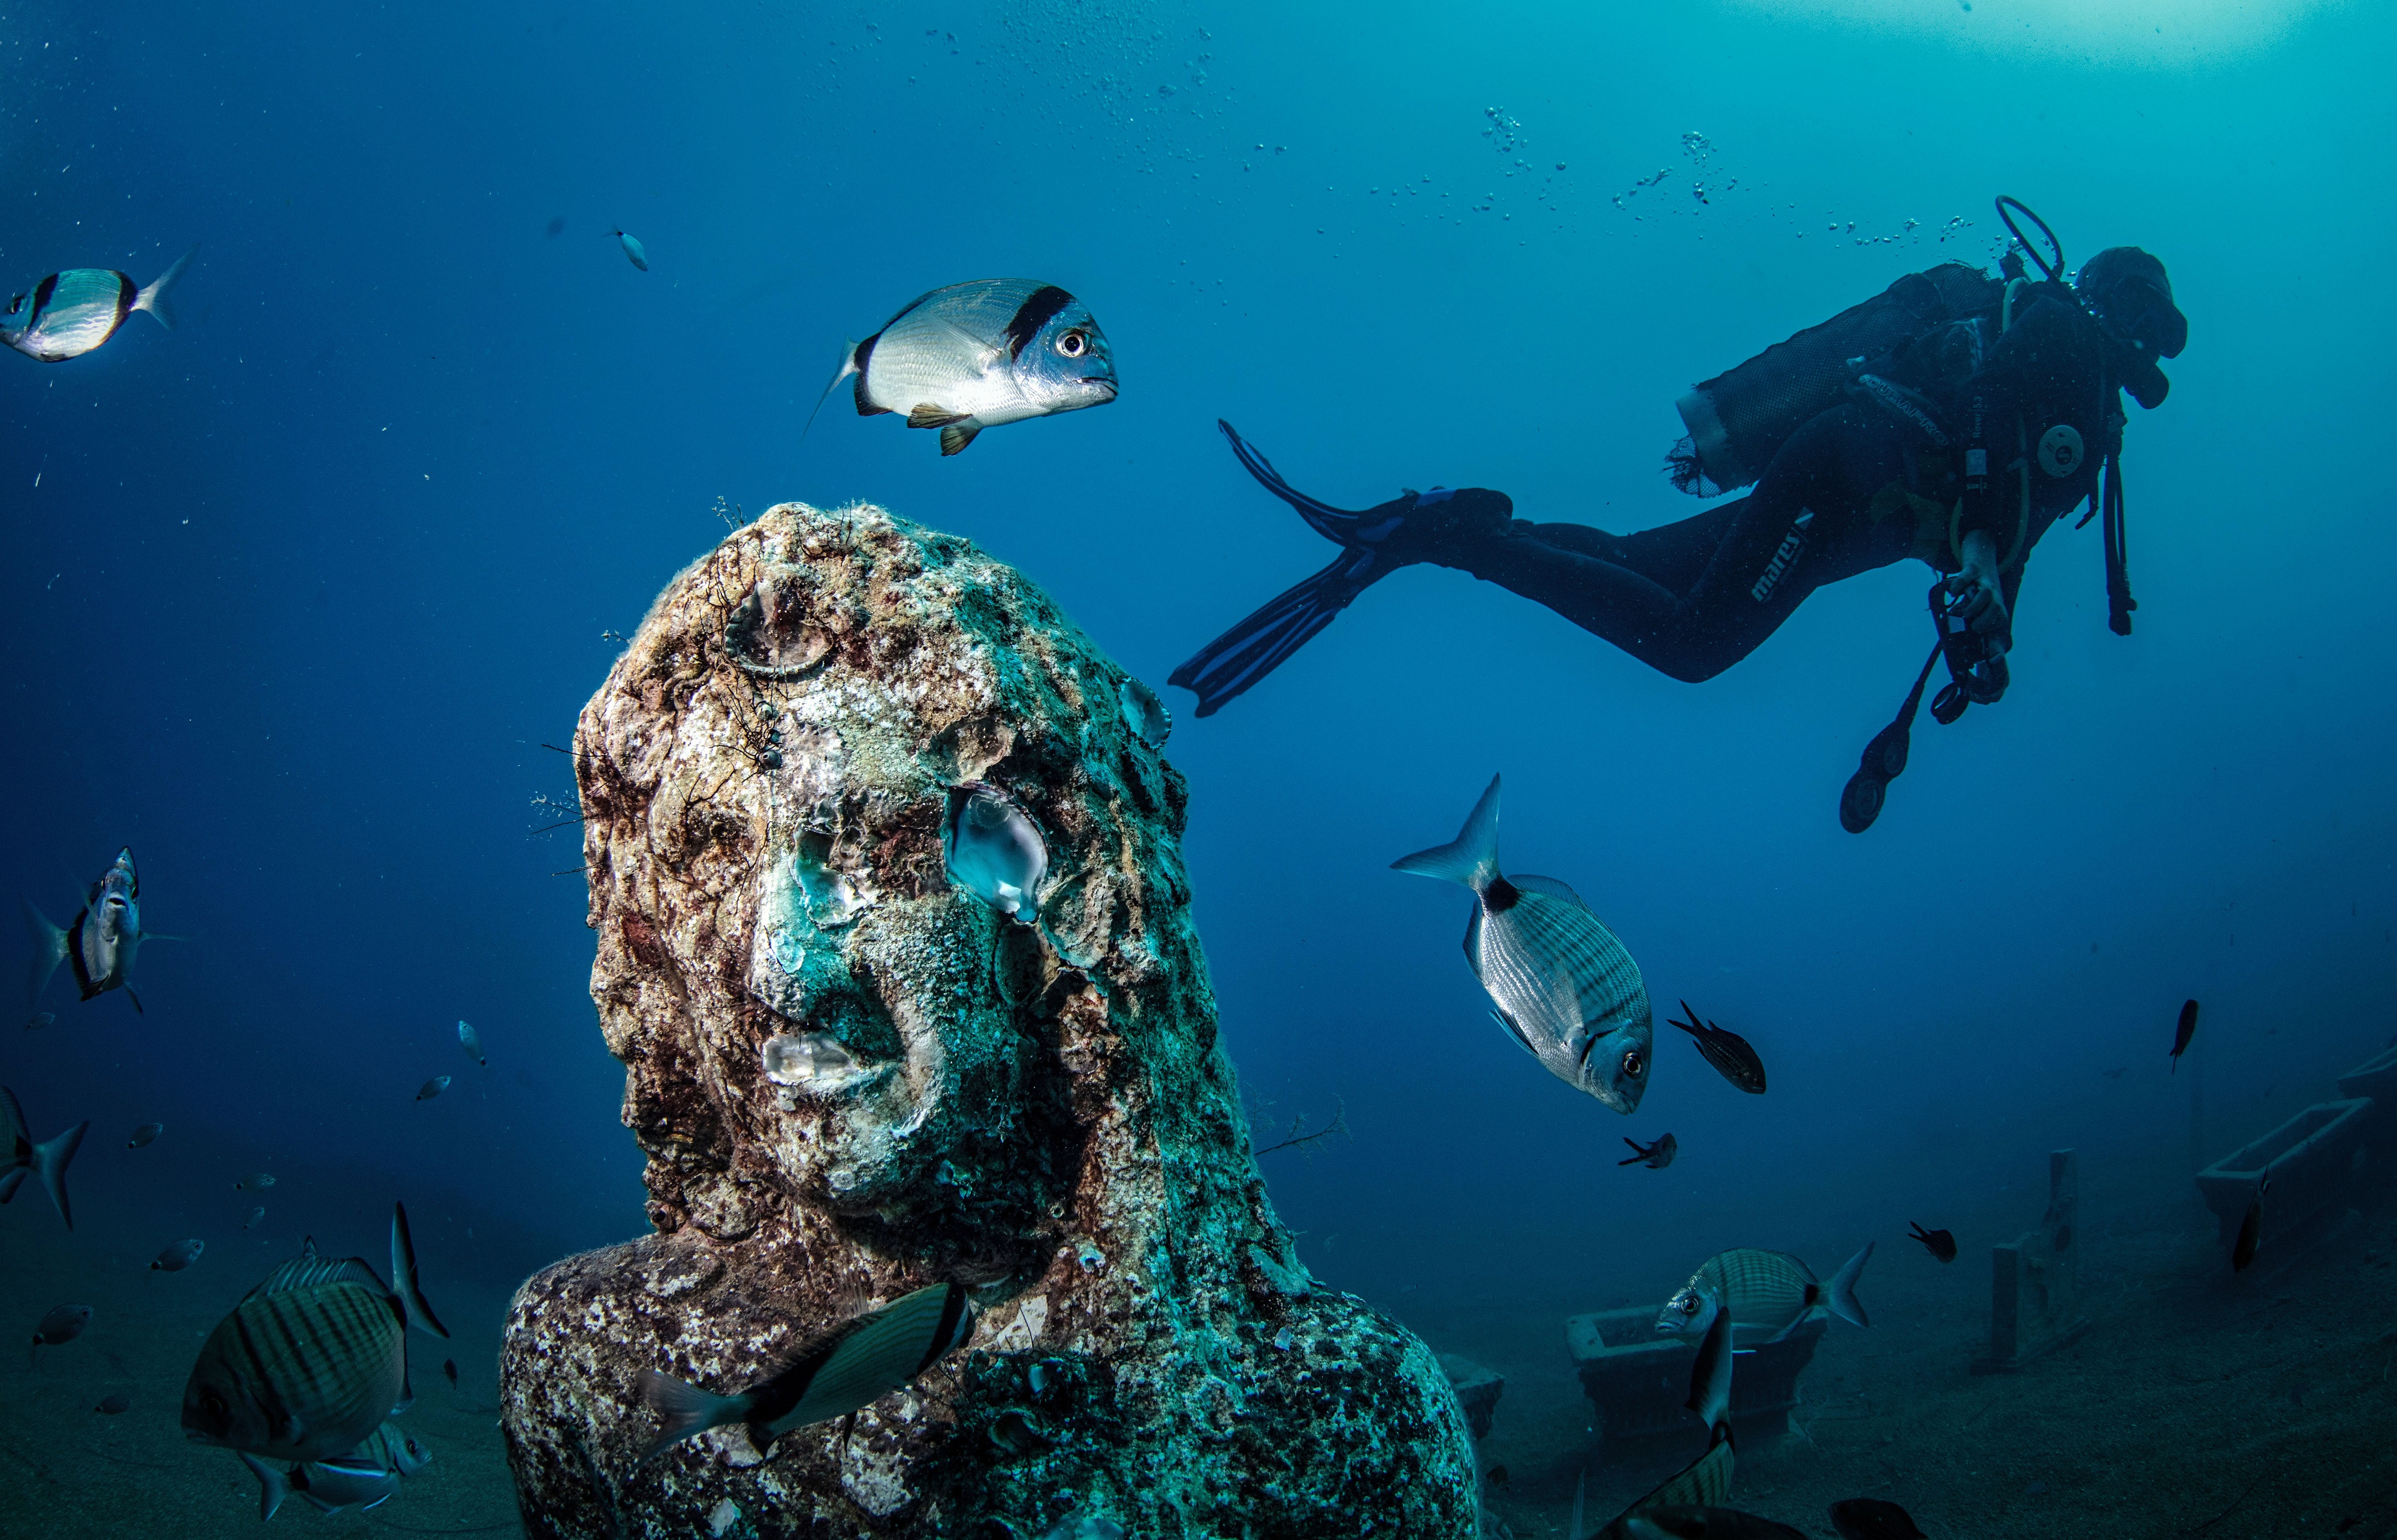 Turkey's first underwater museum 'Side Underwater Museum'